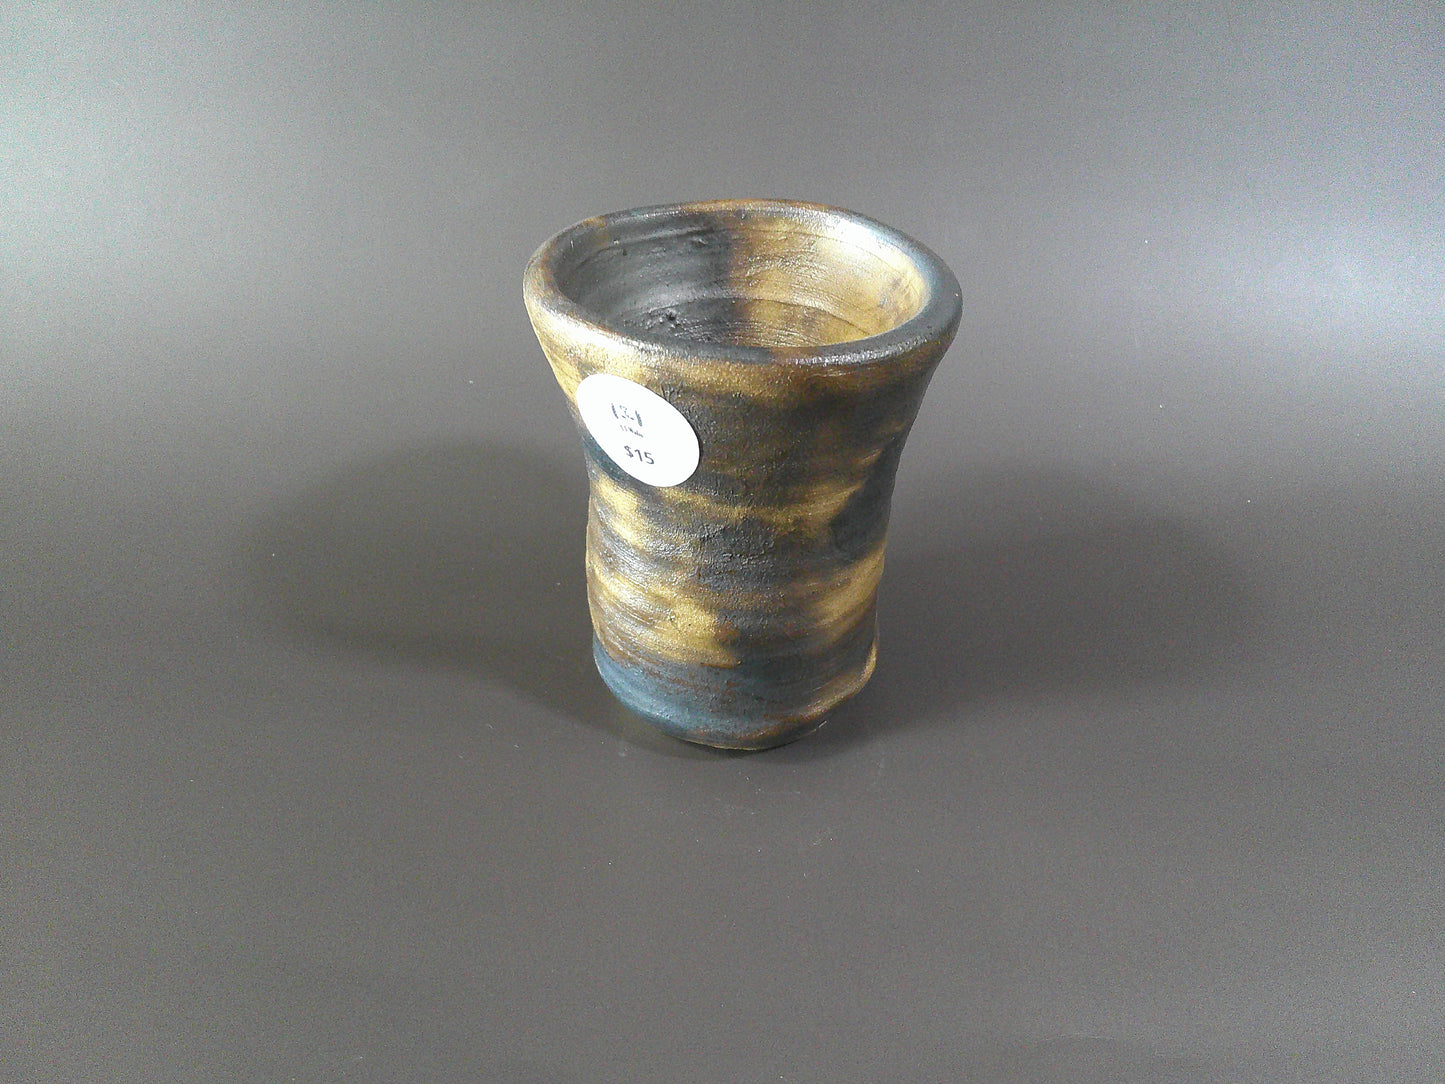 Gold/Black Pottery piece $15